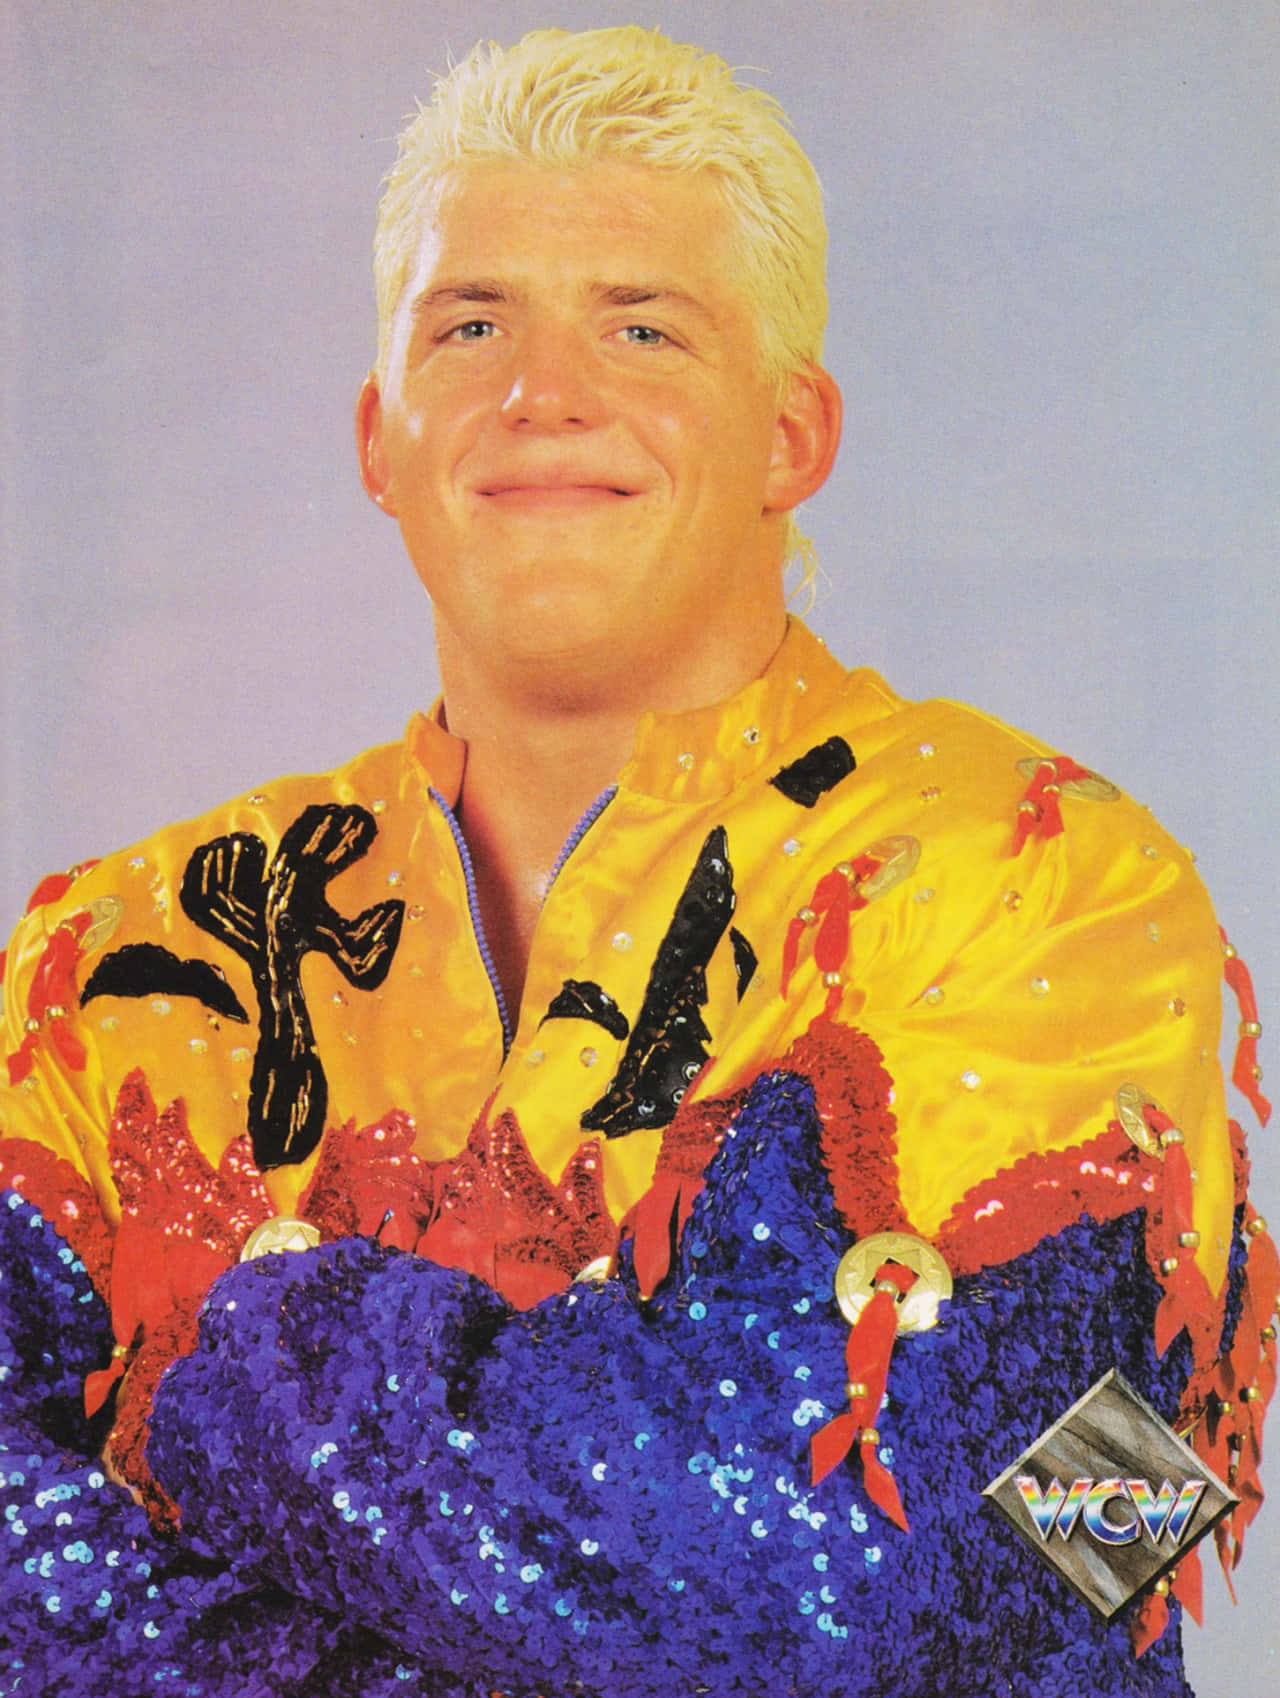 Dustin Rhodes In WCW 1994 Wallpaper